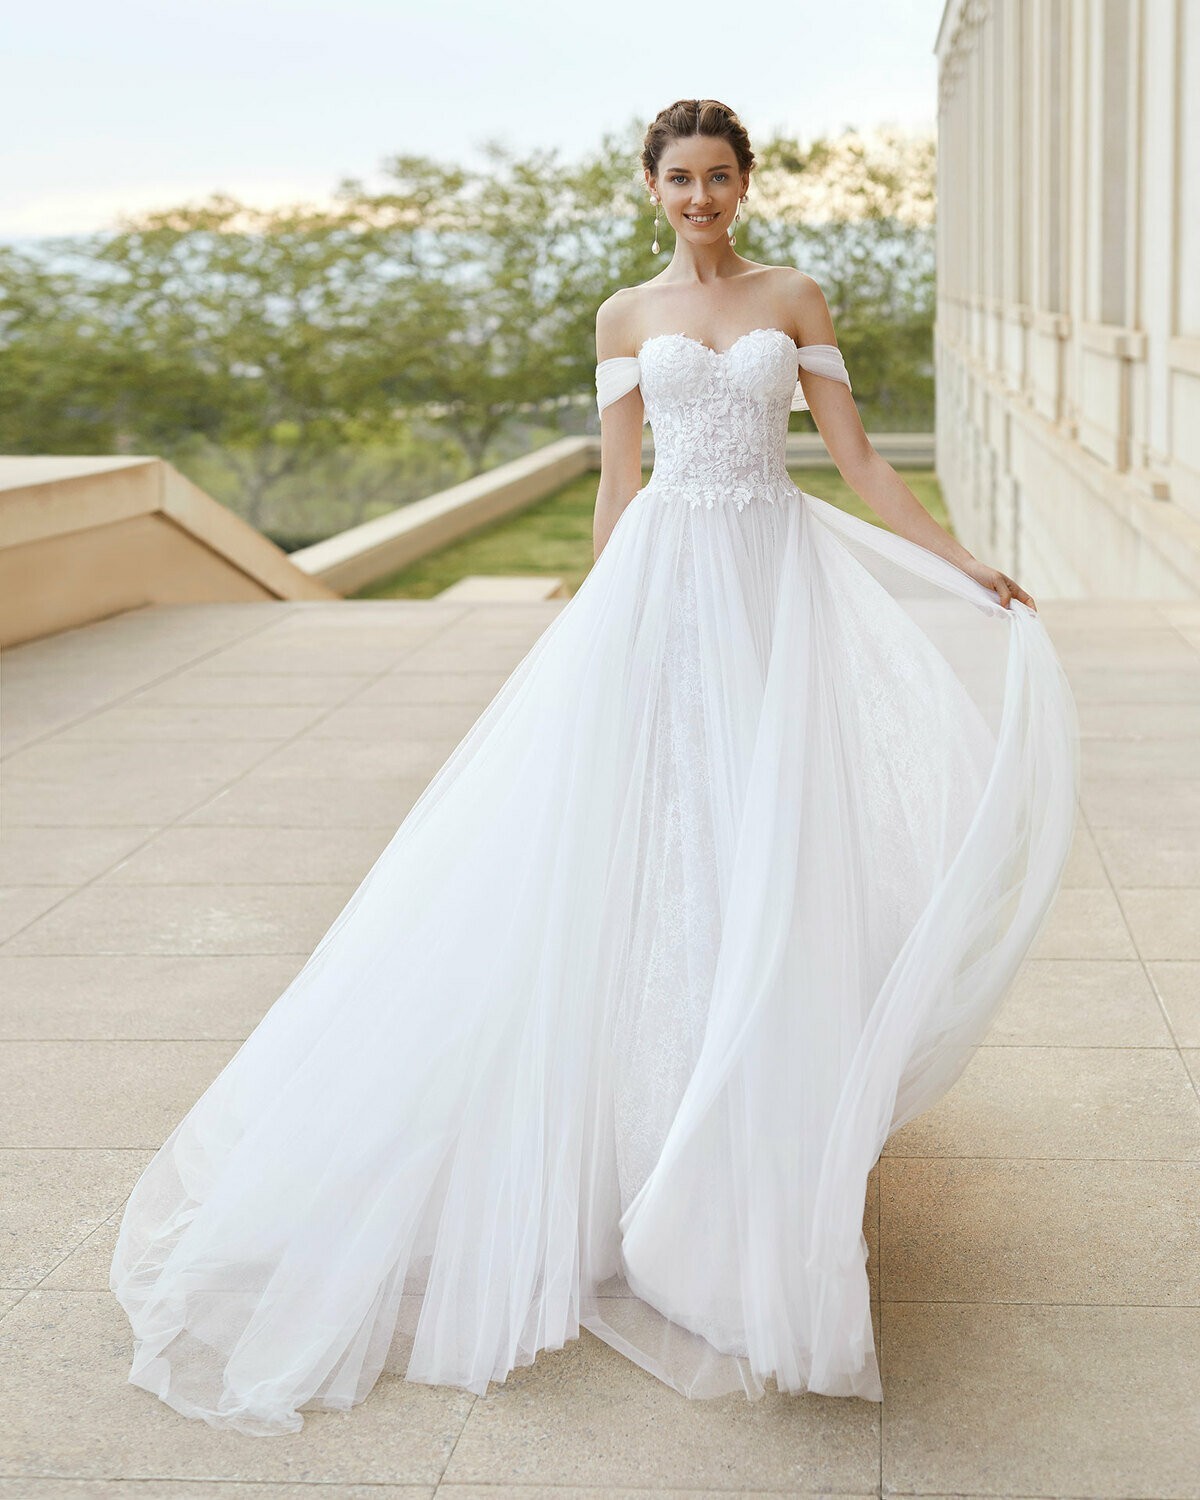 SANTELLA - abito da sposa collezione 2020 - Rosa Clarà Couture